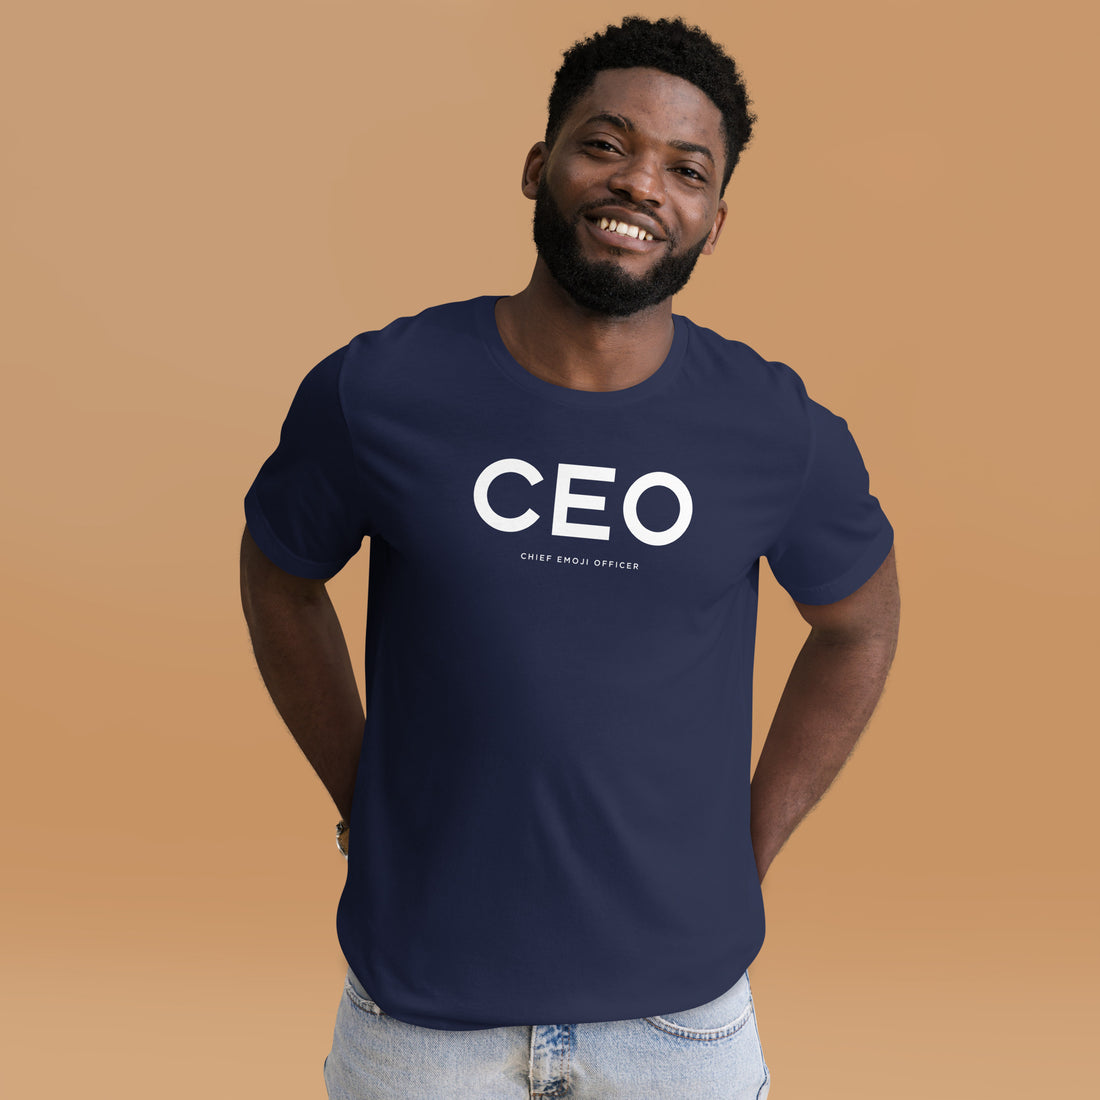 Chief Emoji Officer – Unisex t-shirt